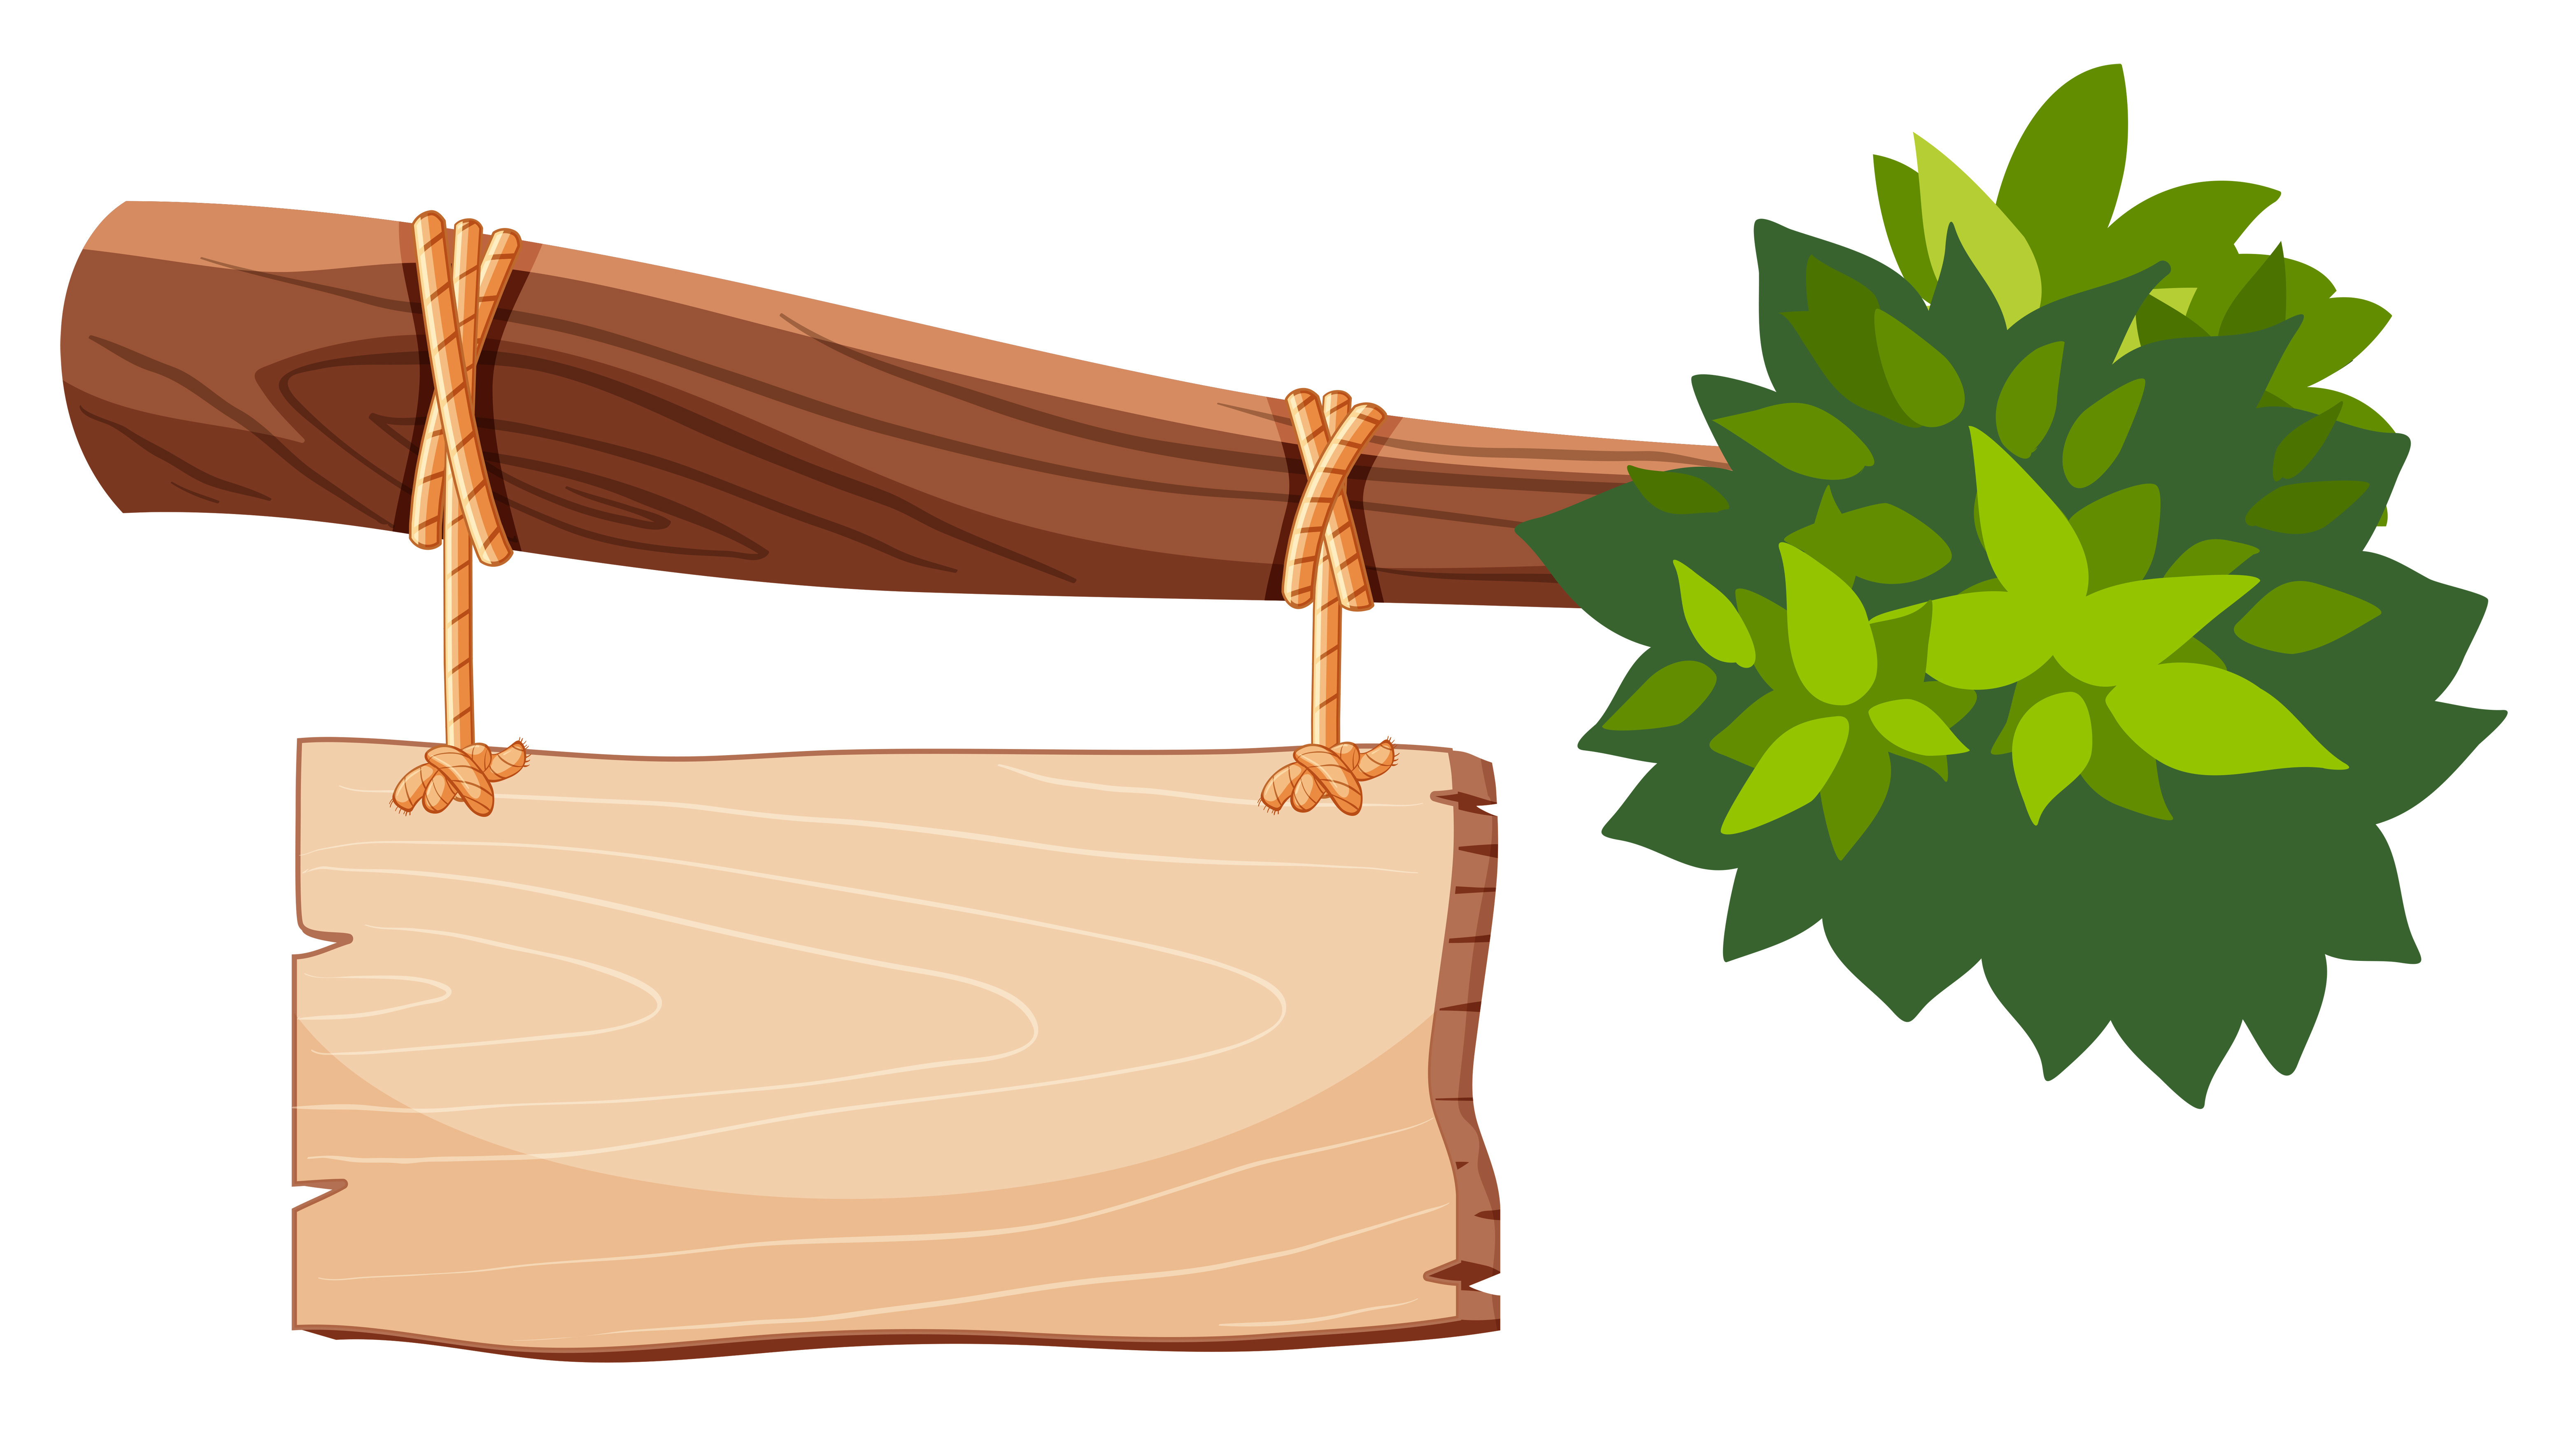 Băng rôn gỗ (wooden banner): Tại sao không sử dụng một băng rôn gỗ để quảng cáo sản phẩm của bạn? Hãy nhìn vào hình ảnh để thấy sự độc đáo và cổ điển của băng rôn gỗ. Với màu sắc và vân gỗ tự nhiên, sản phẩm của bạn chắc chắn sẽ được thể hiện một cách tuyệt vời.